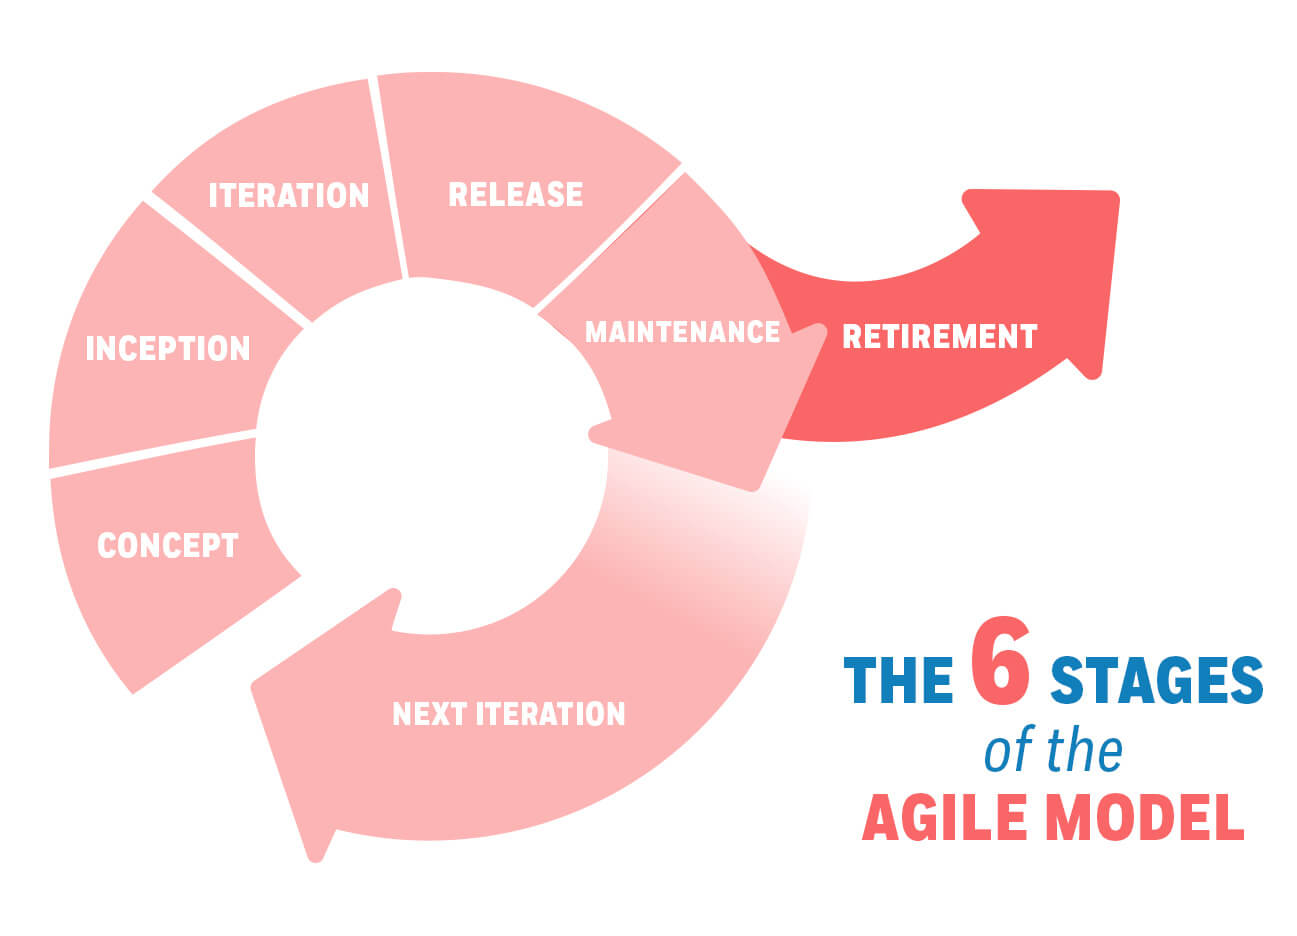 safe agile methodology steps